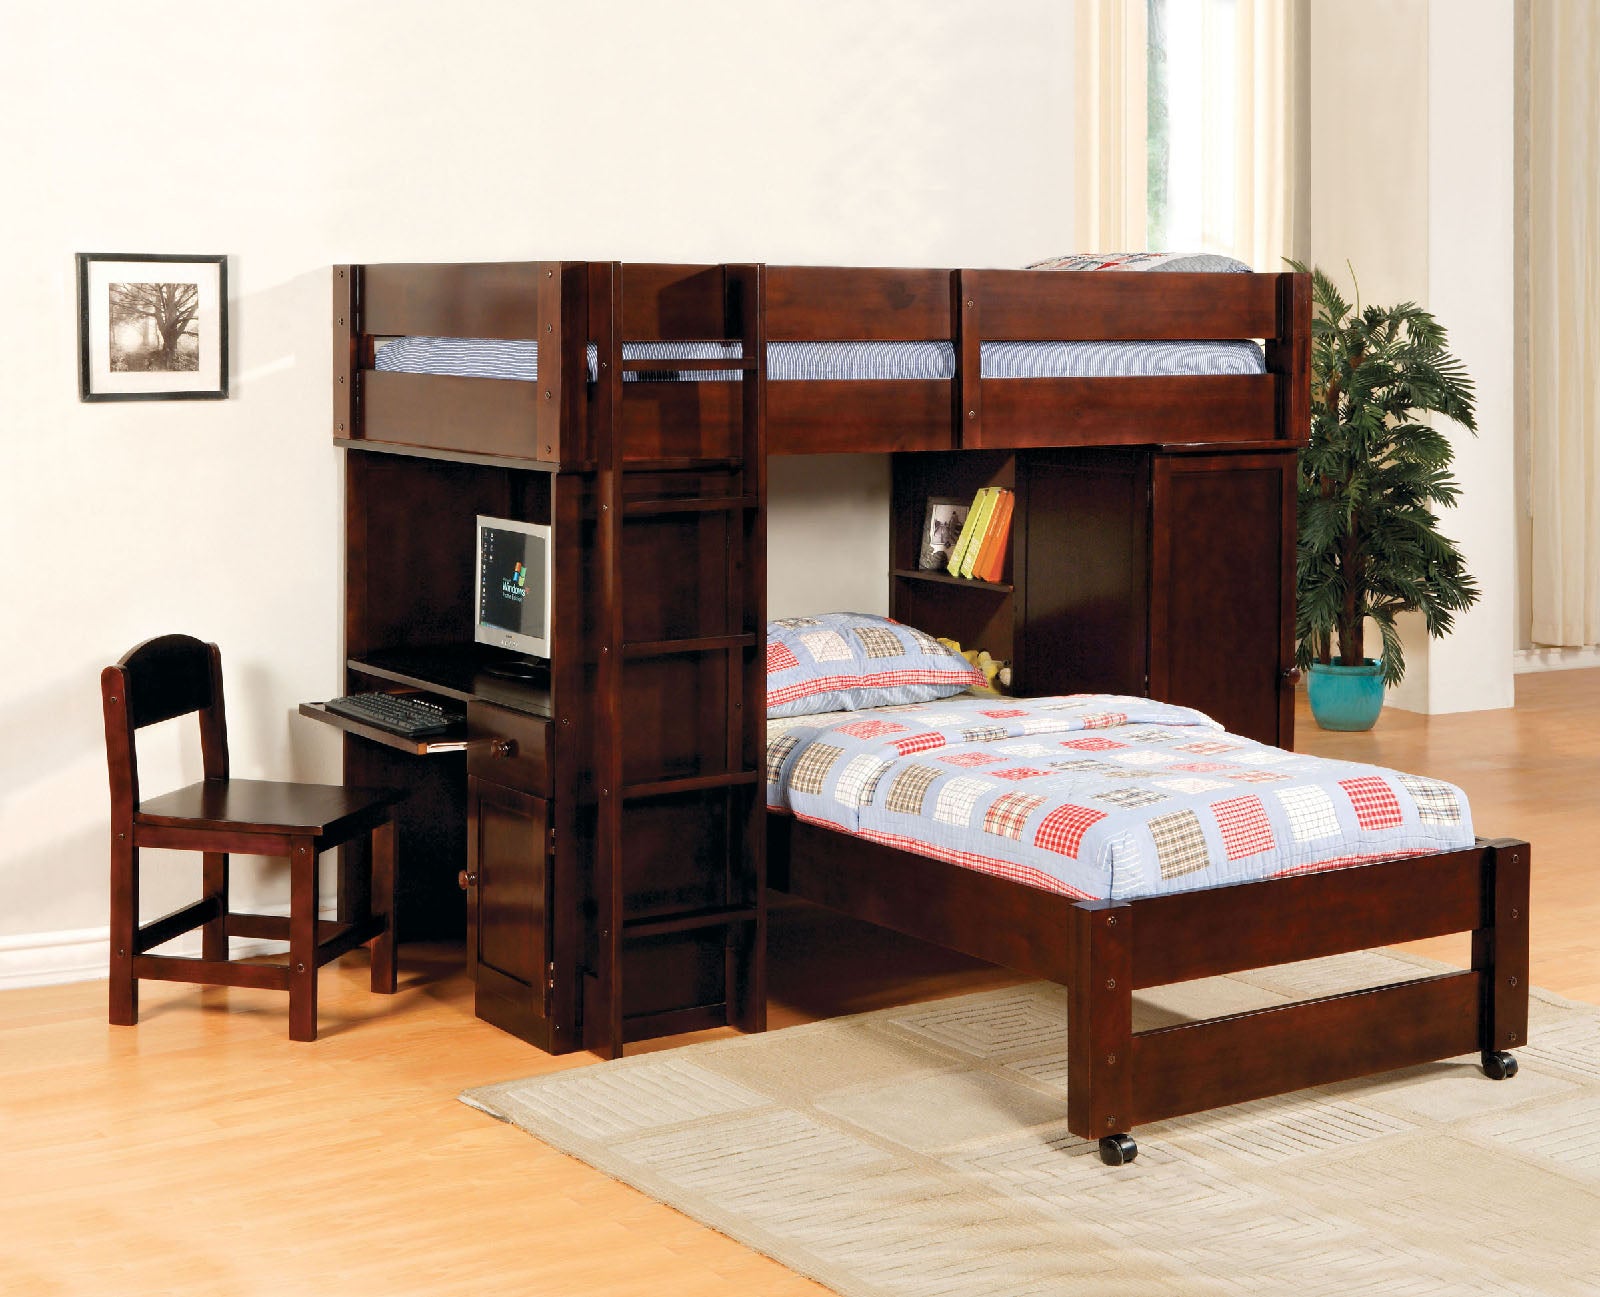 Cm Bk529exp Twin Loft Bed With Built In Desk Chair La